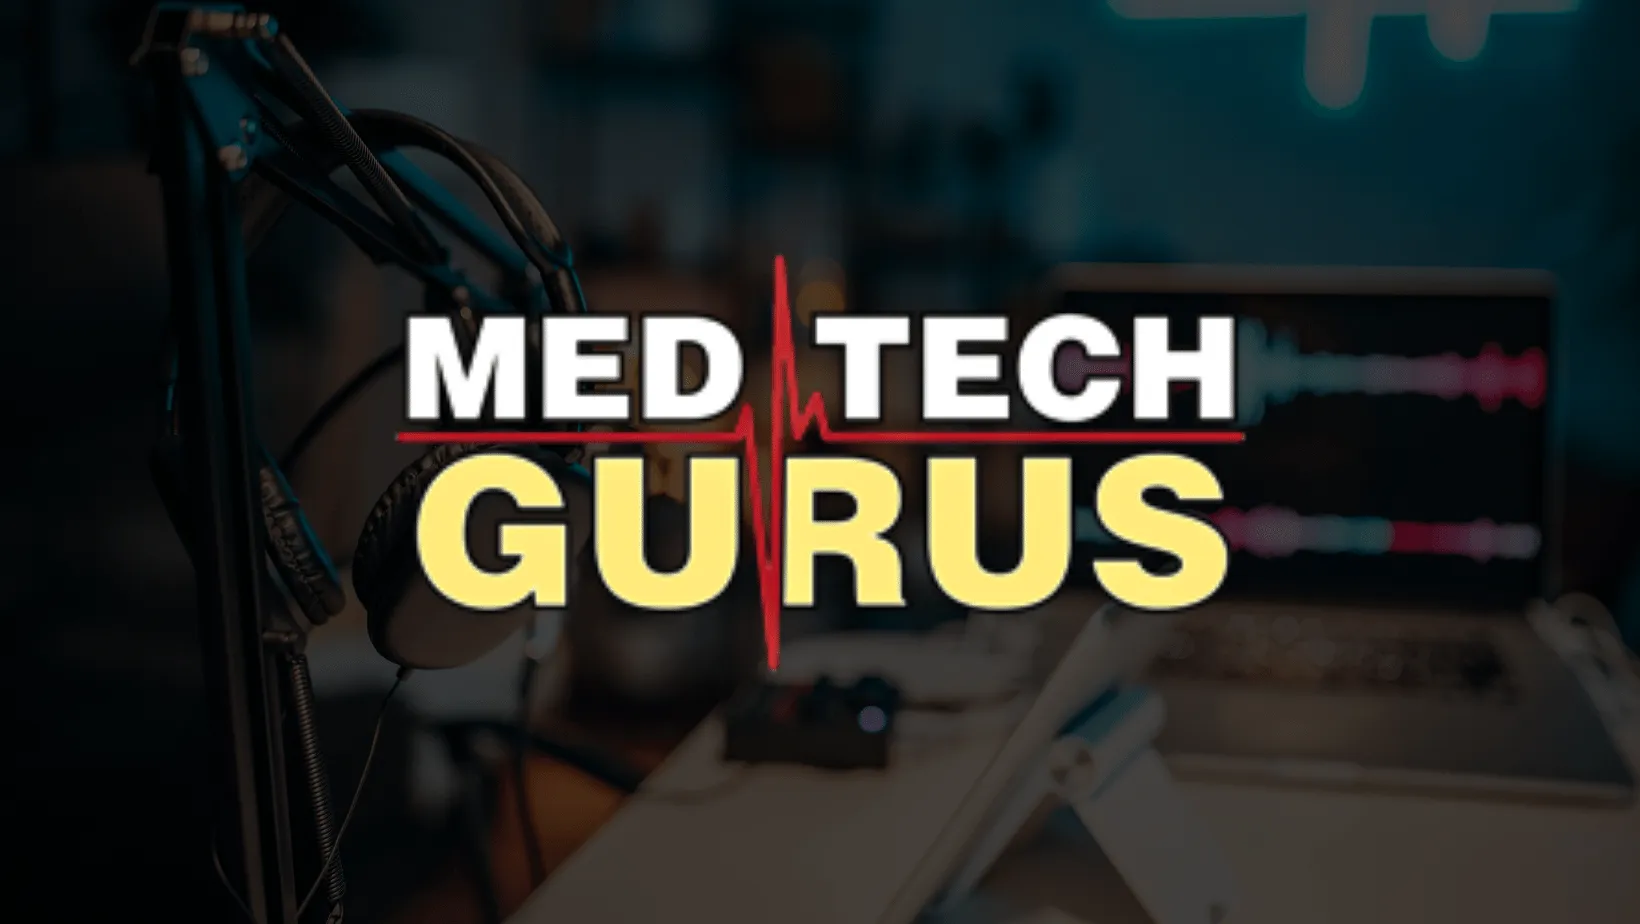 White Med Tech Gurus podcast logo over a dark background.